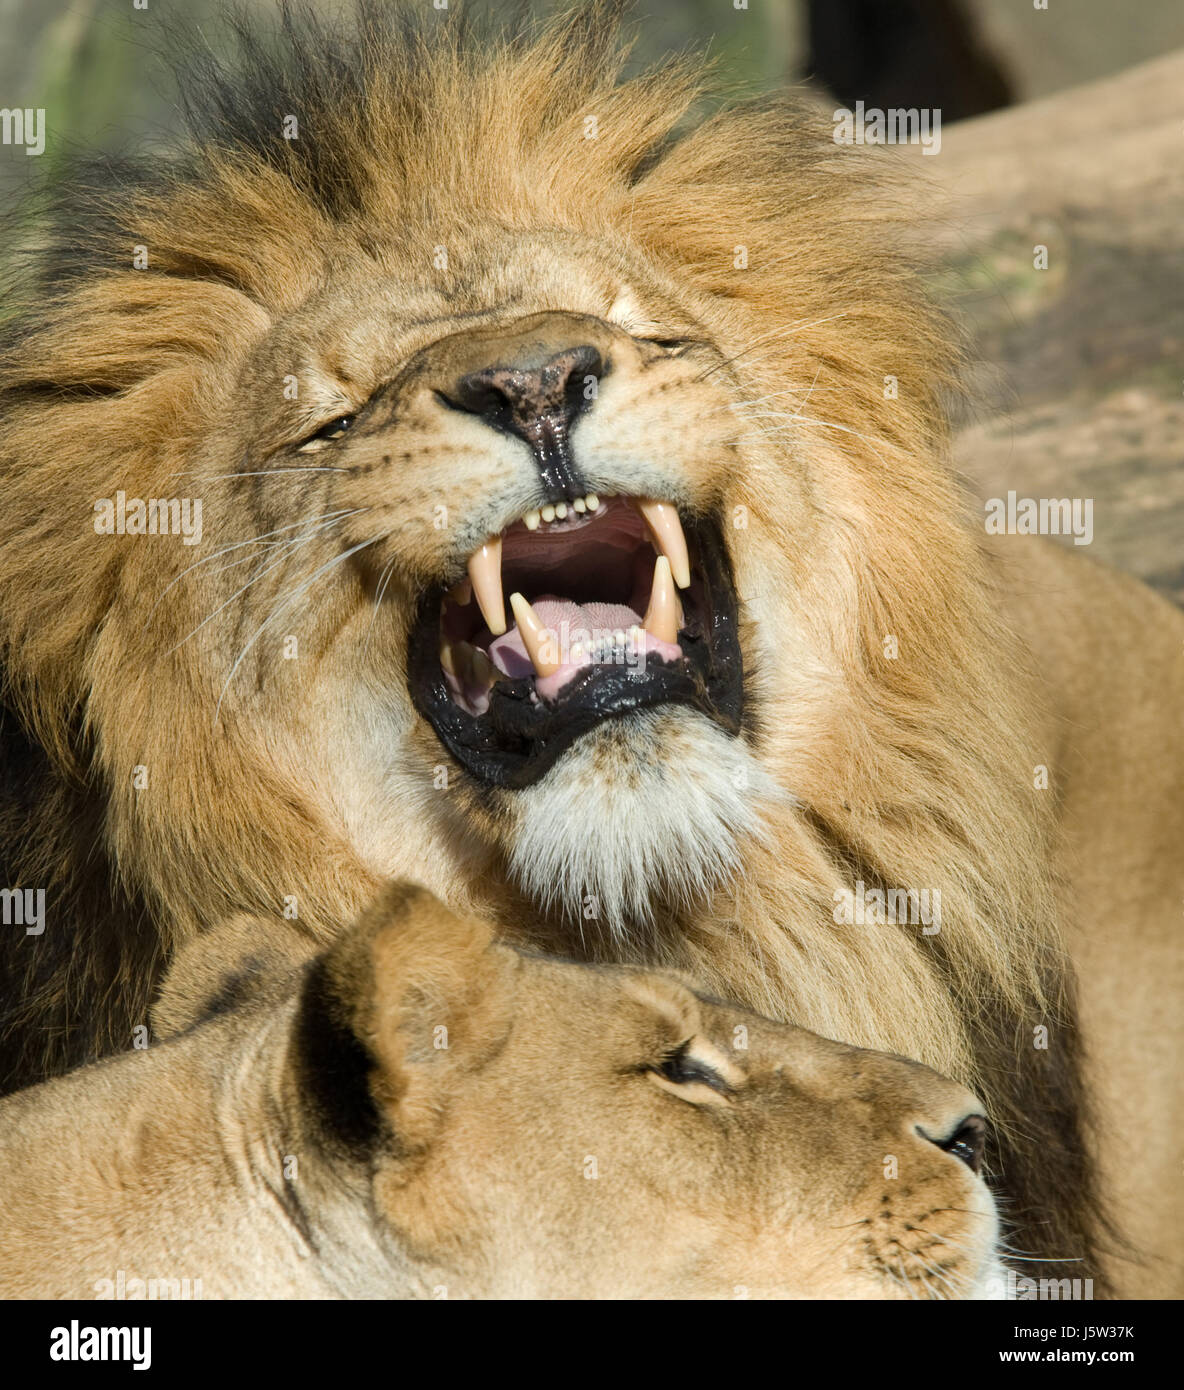 closeup of a lion Stock Photo